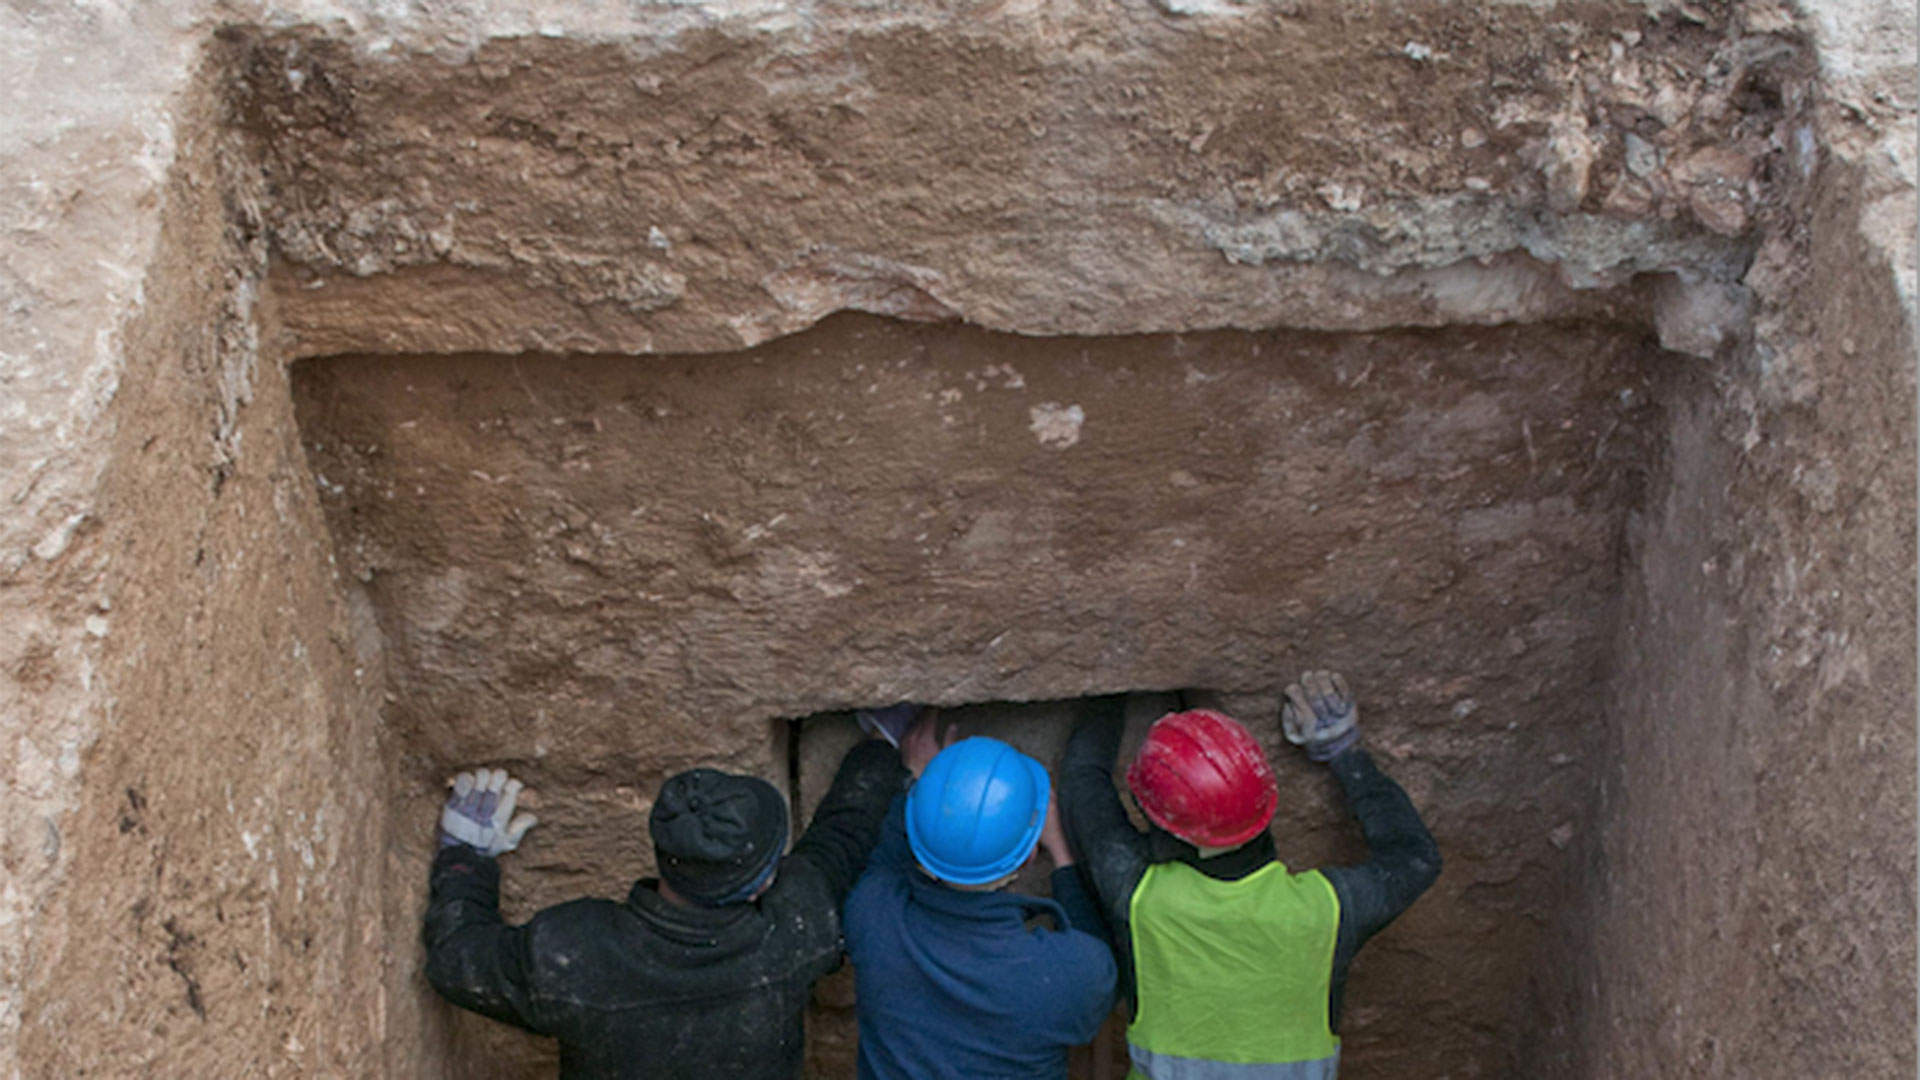 Αρχαιότερος τόπος ταφής στον κόσμο: Η απρόσμενη ανακάλυψη που αλλάζει την Ιστορία